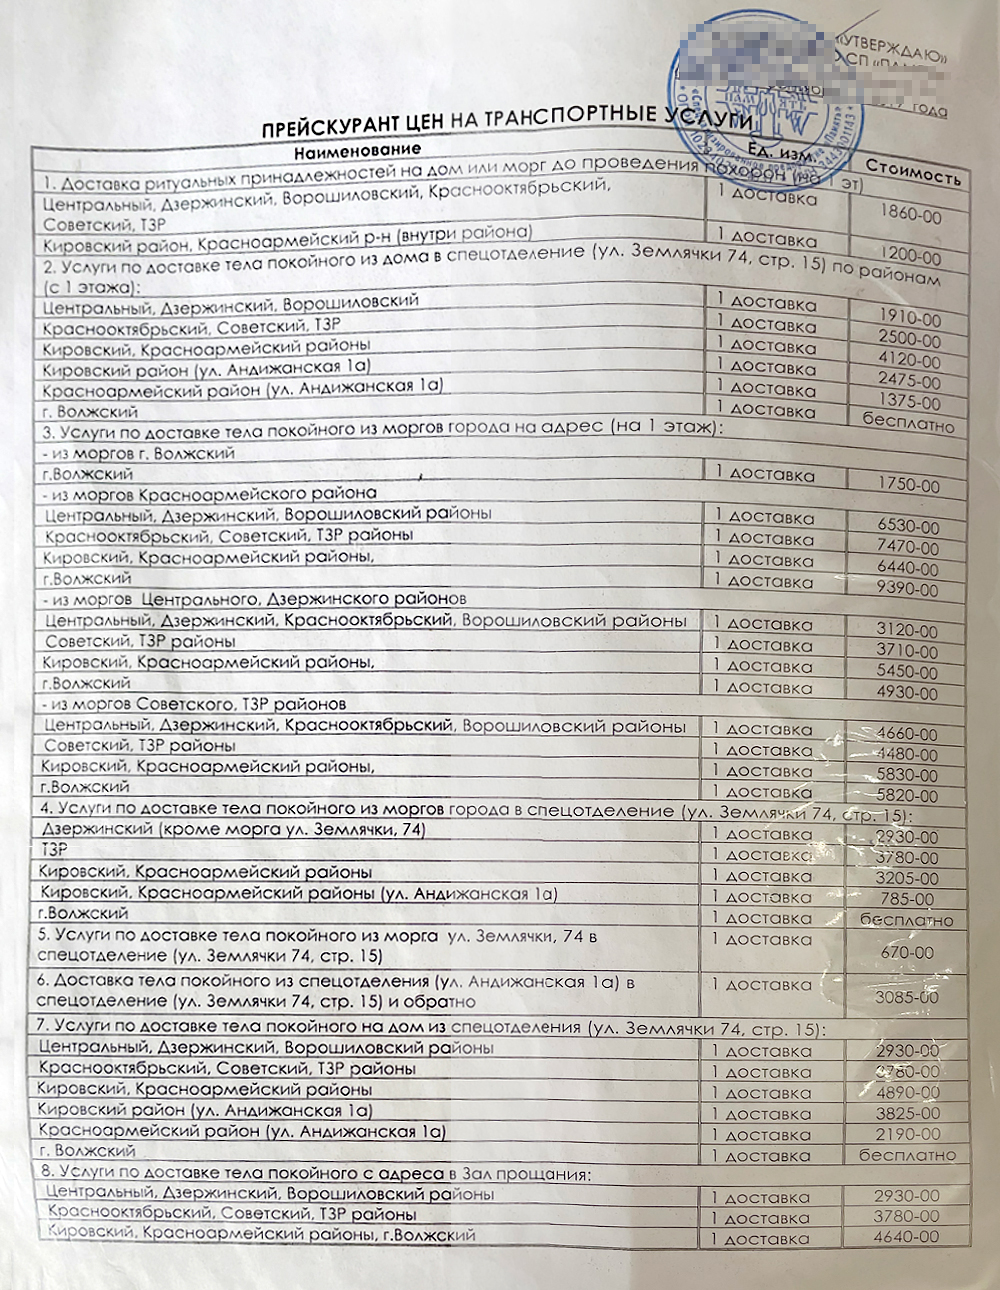 Это страница из прайса ритуальной службы «Память» с ценами на доставку покойных из моргов Волгограда